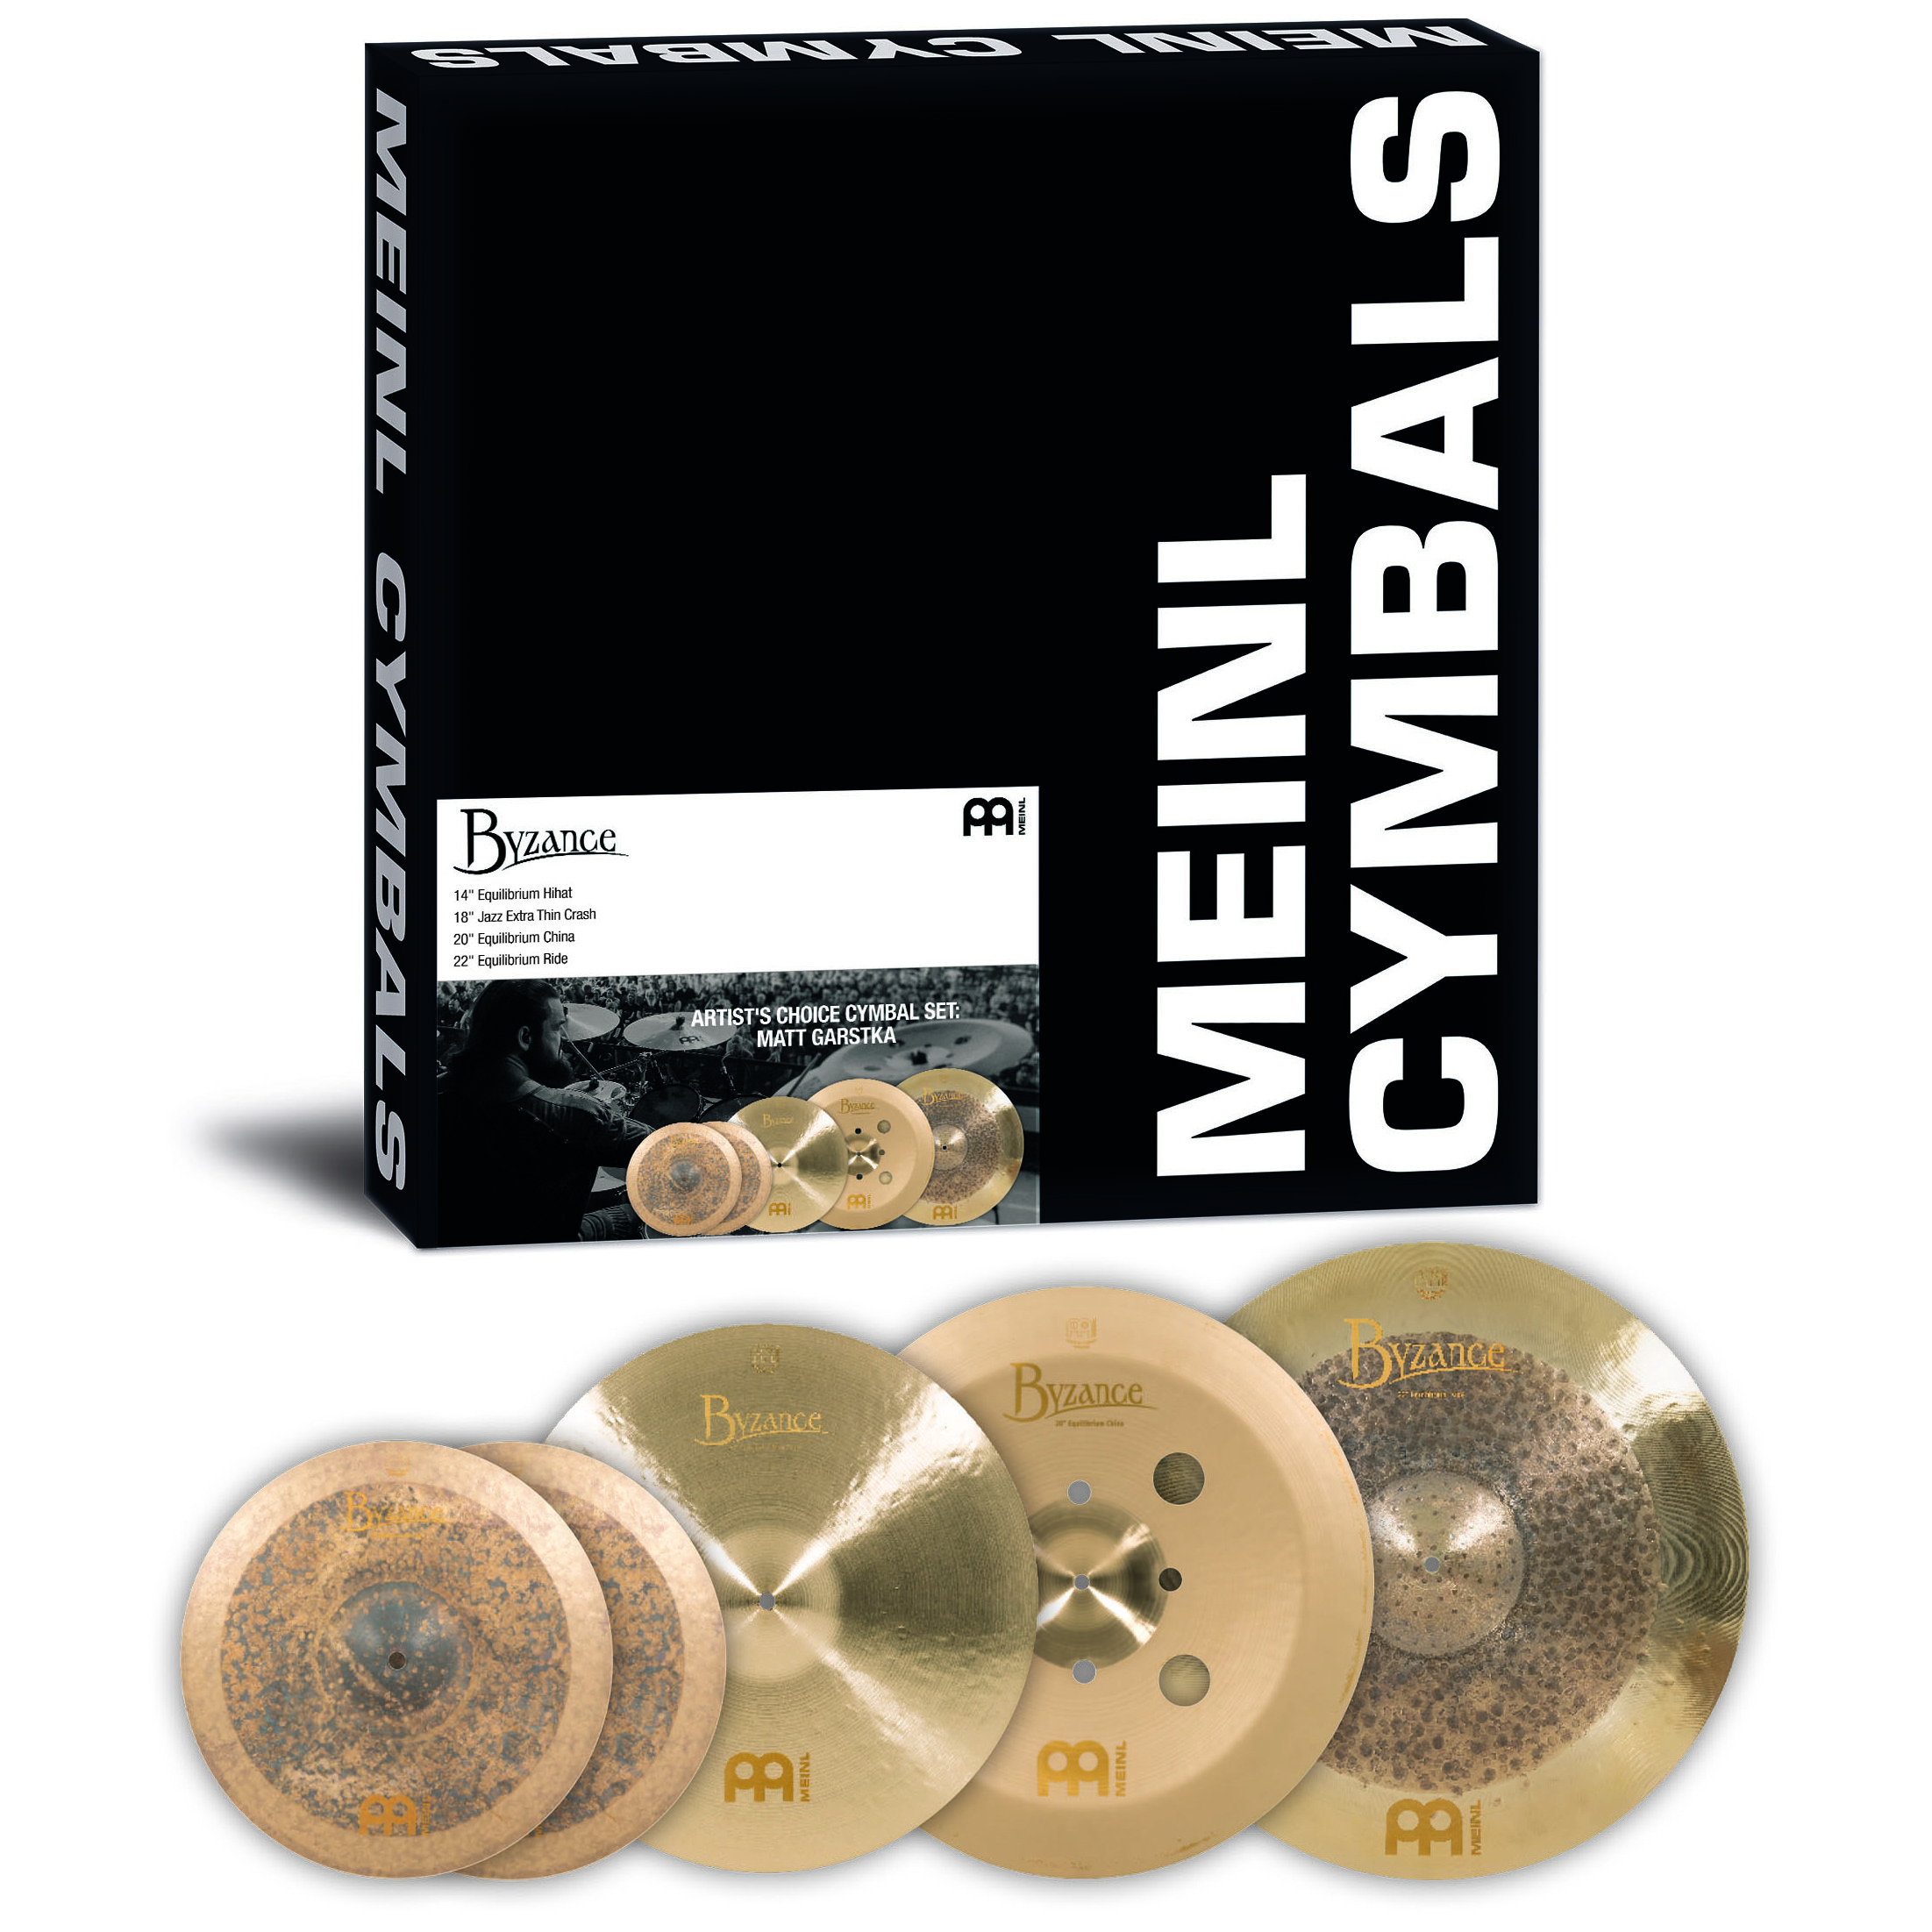 Meinl Cymbals A-CS4 - Byzance Artist's Choice Cymbal Set: Matt Garstka